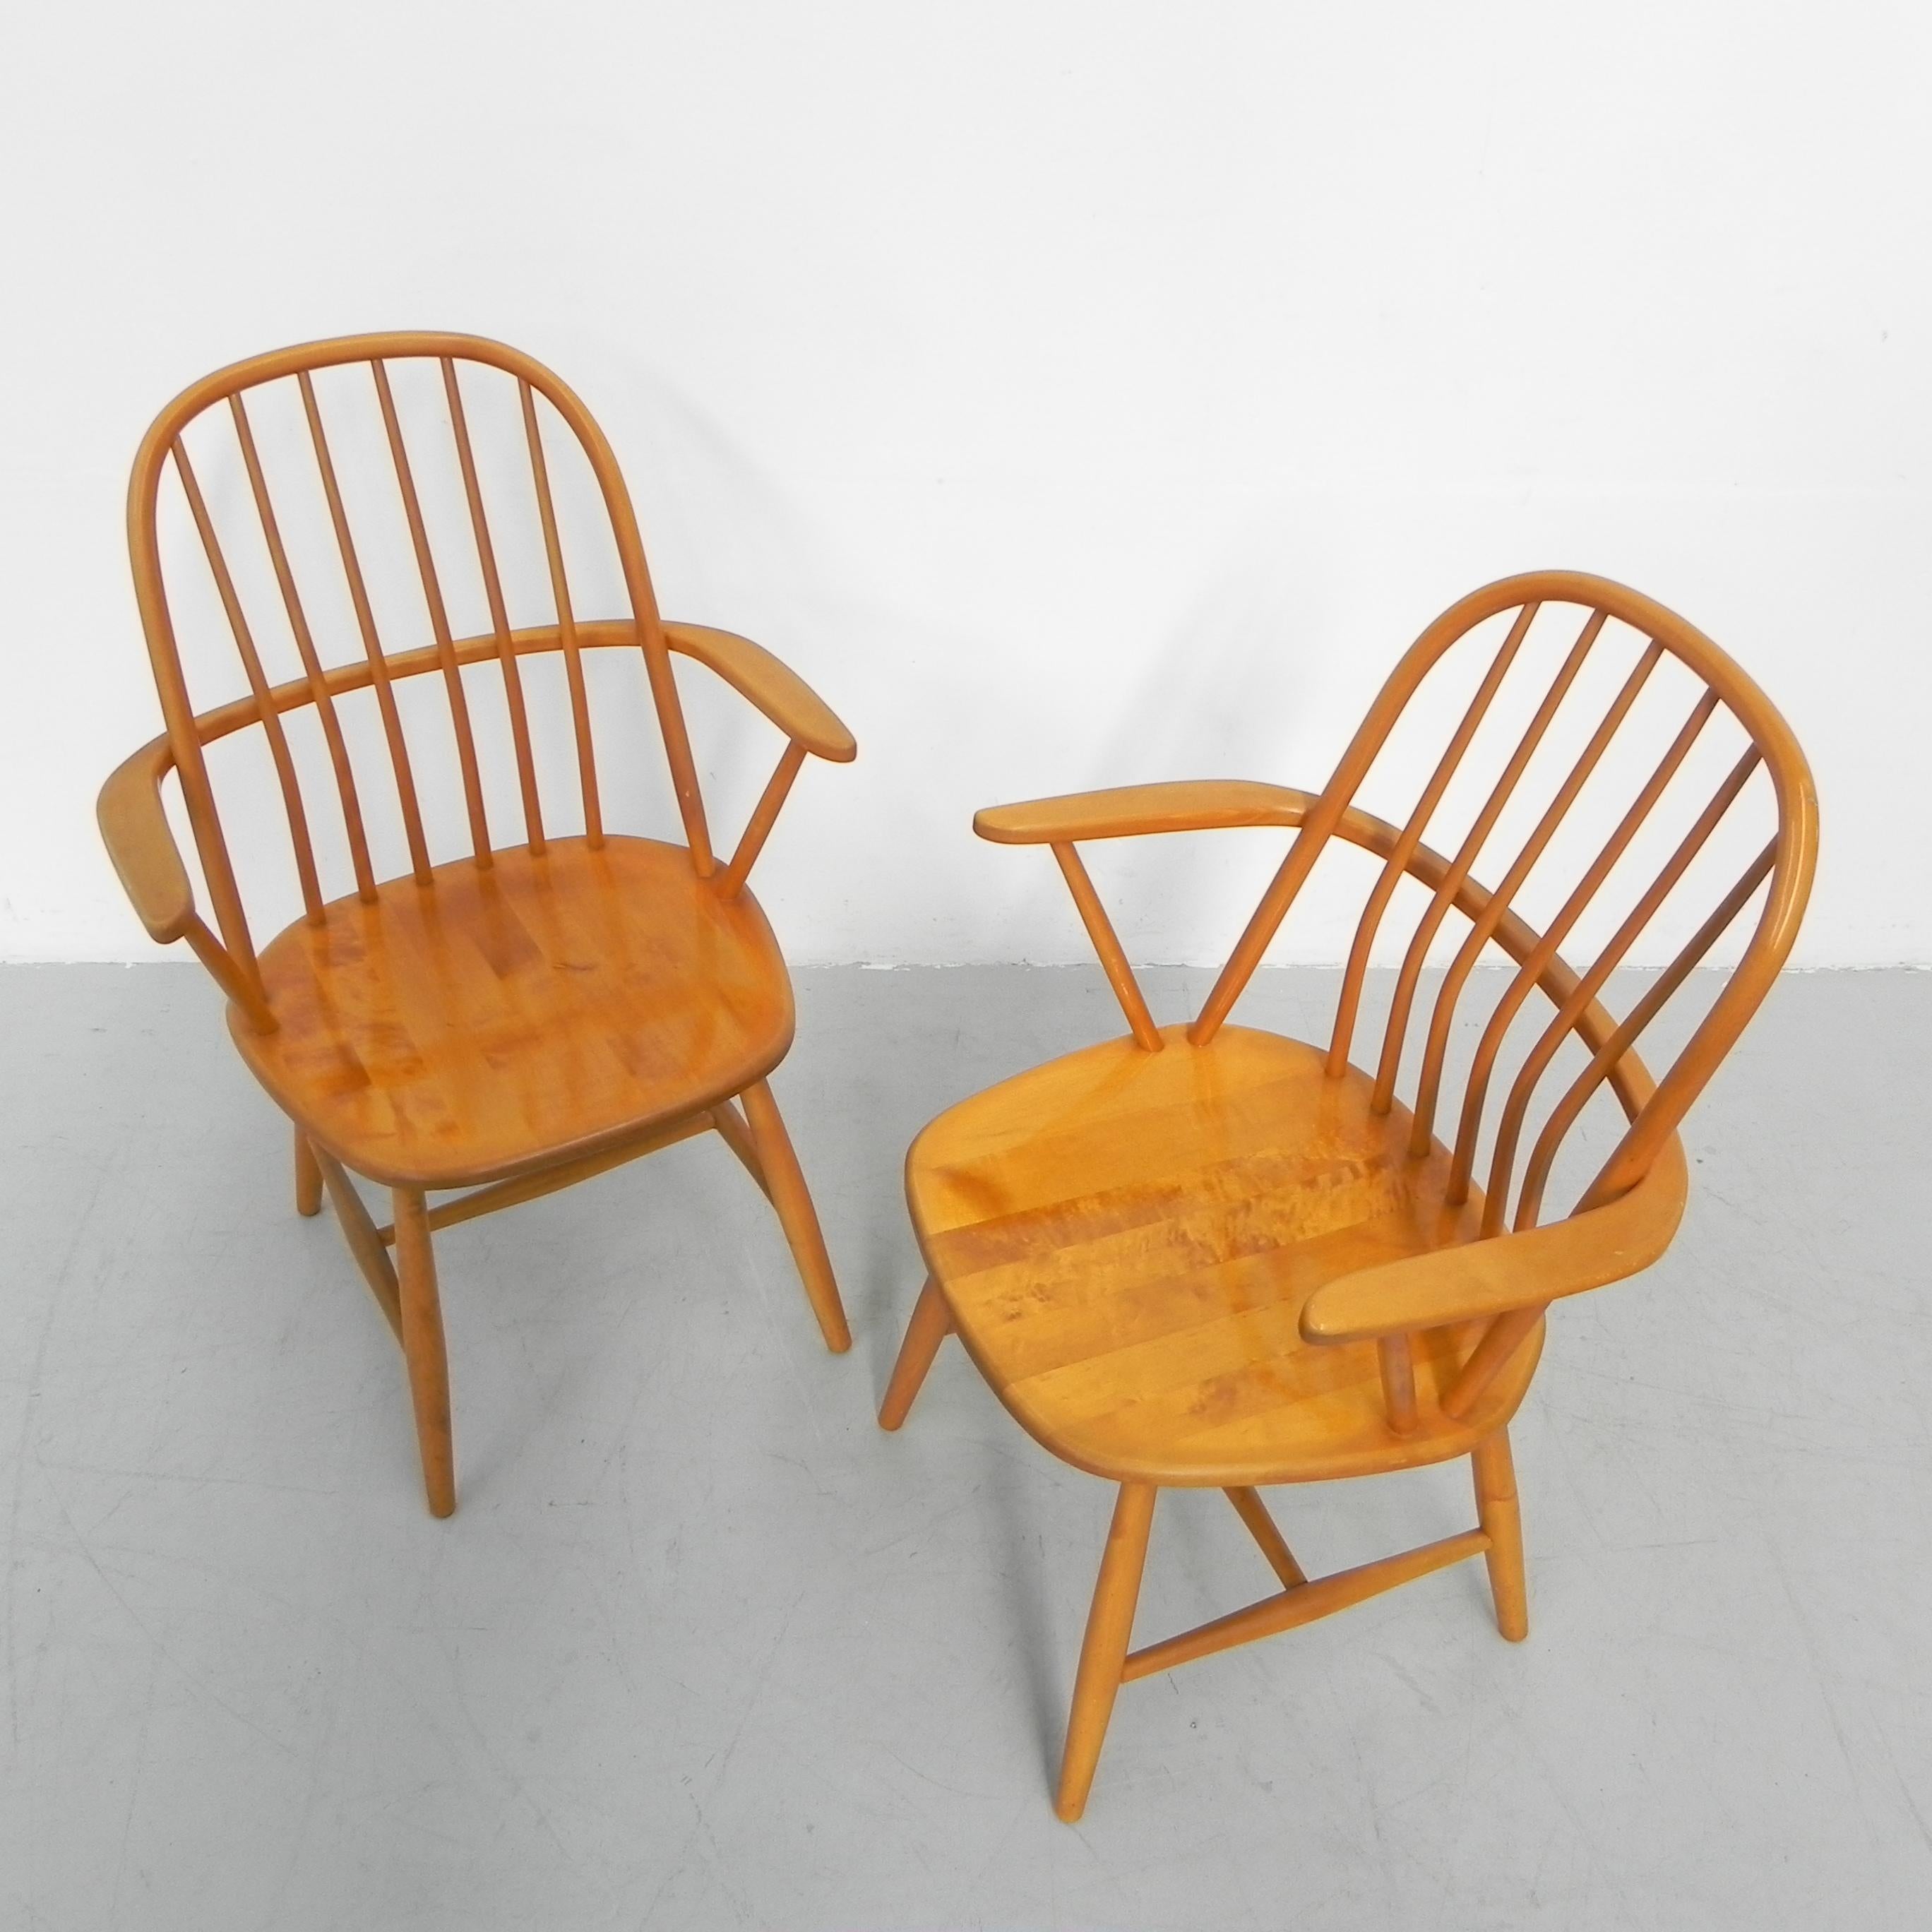 Ces chaises sont conçues et produites par Bengt Akerblom.
par Nassjo Fabrikant (plus tard Nesto) au début des années 1950.

Hauteur : 89 cm.
Hauteur du siège : 42 cm.
Largeur : 60 cm.
Profondeur : 56 cm.
Origine : Suède, années 1950.
MATERIAL :